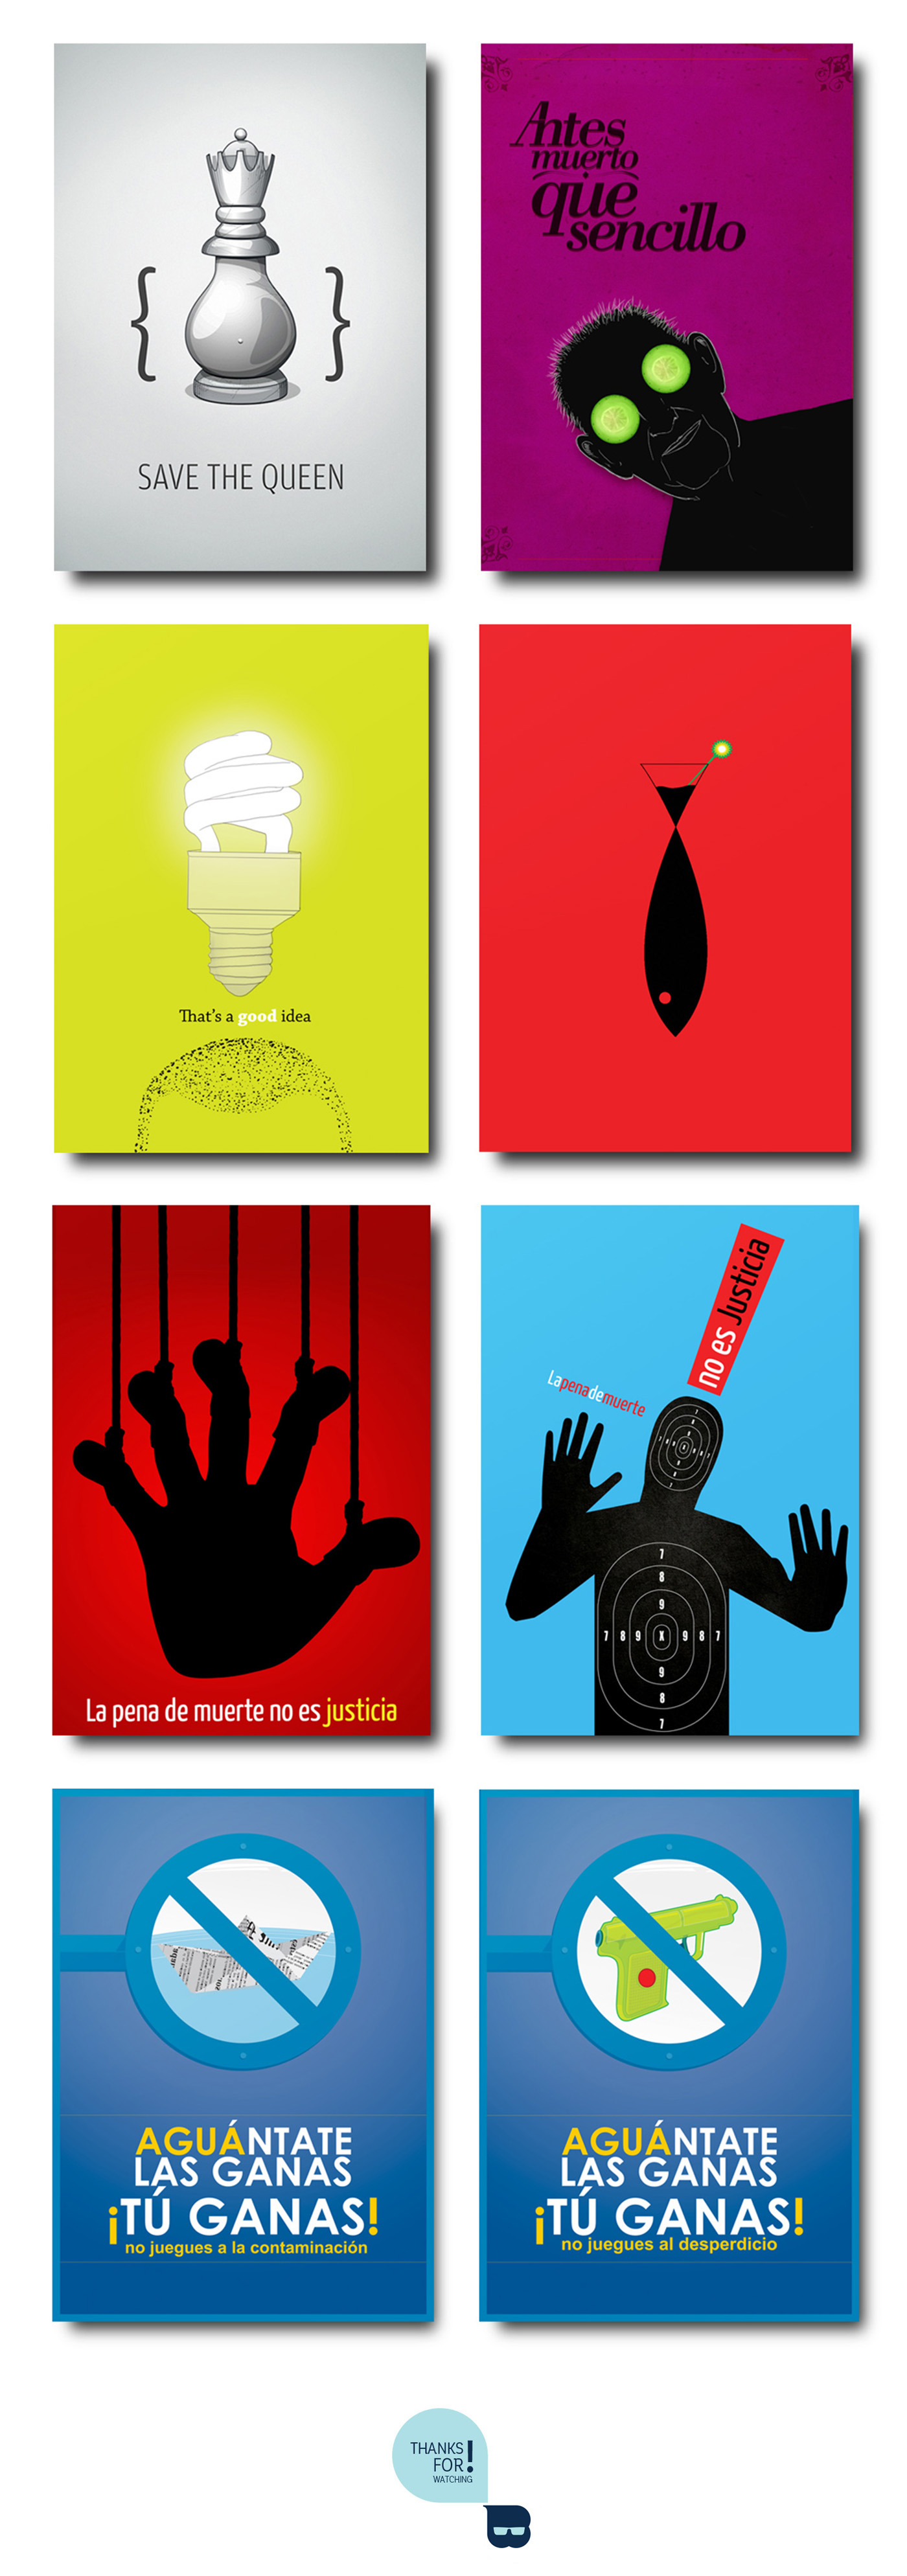 Walter Bolivar posterdesign socialposter social poster humanrights enviroment water politicalposter political Socialdesign